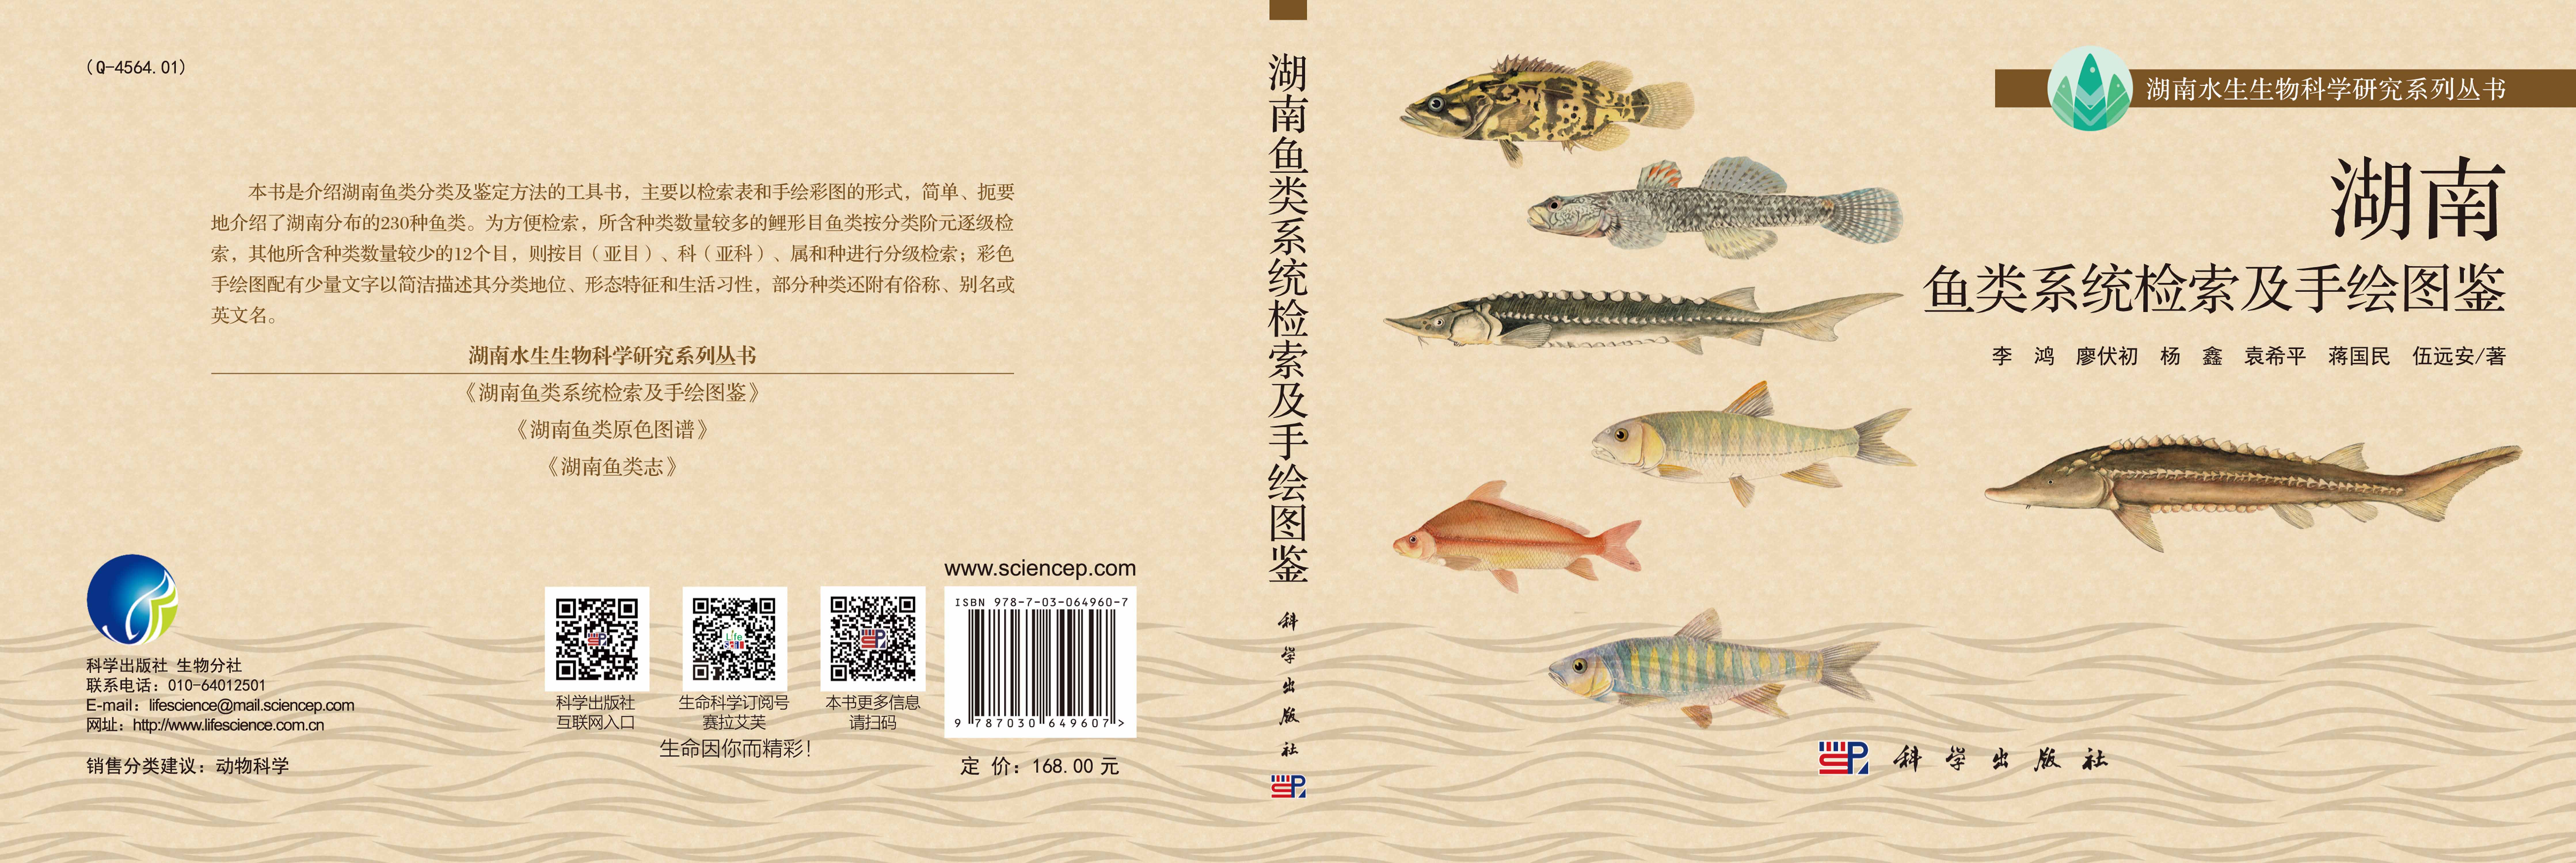 湖南鱼类系统检索及手绘图鉴